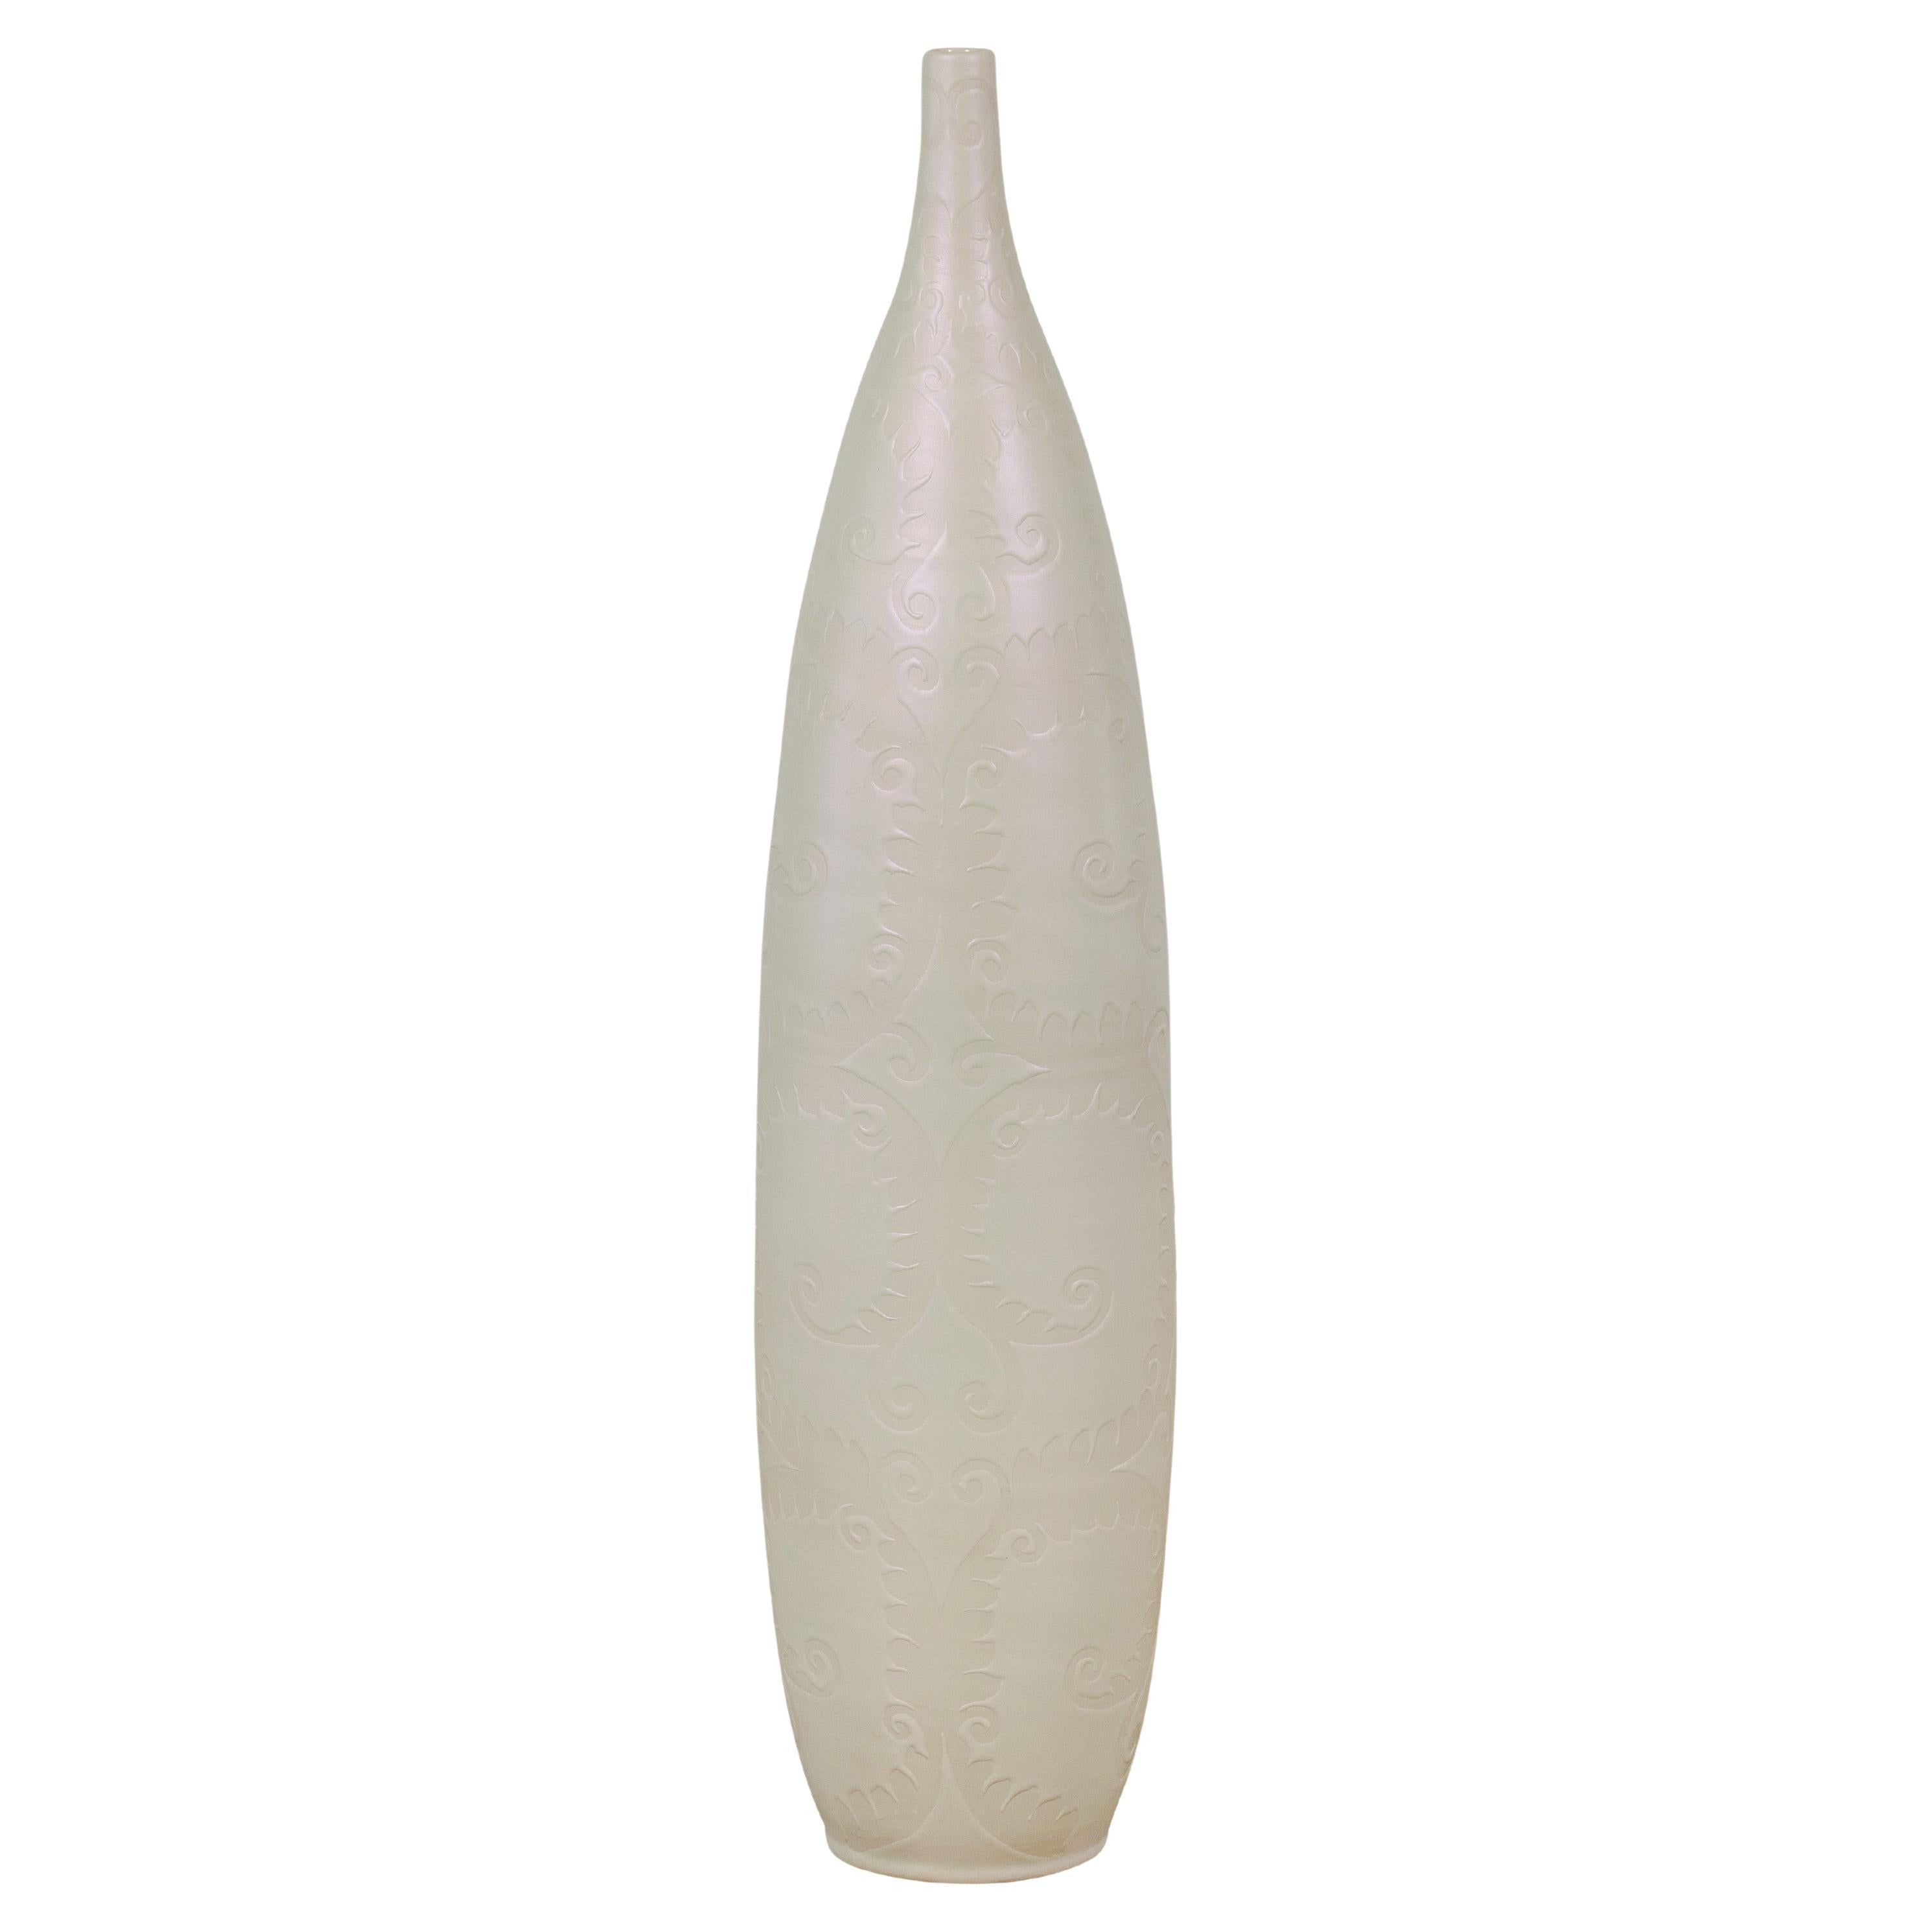 Subtile elfenbeinfarbene große Vase mit erhabenen Schnörkelmotiven und schmalem Mouth